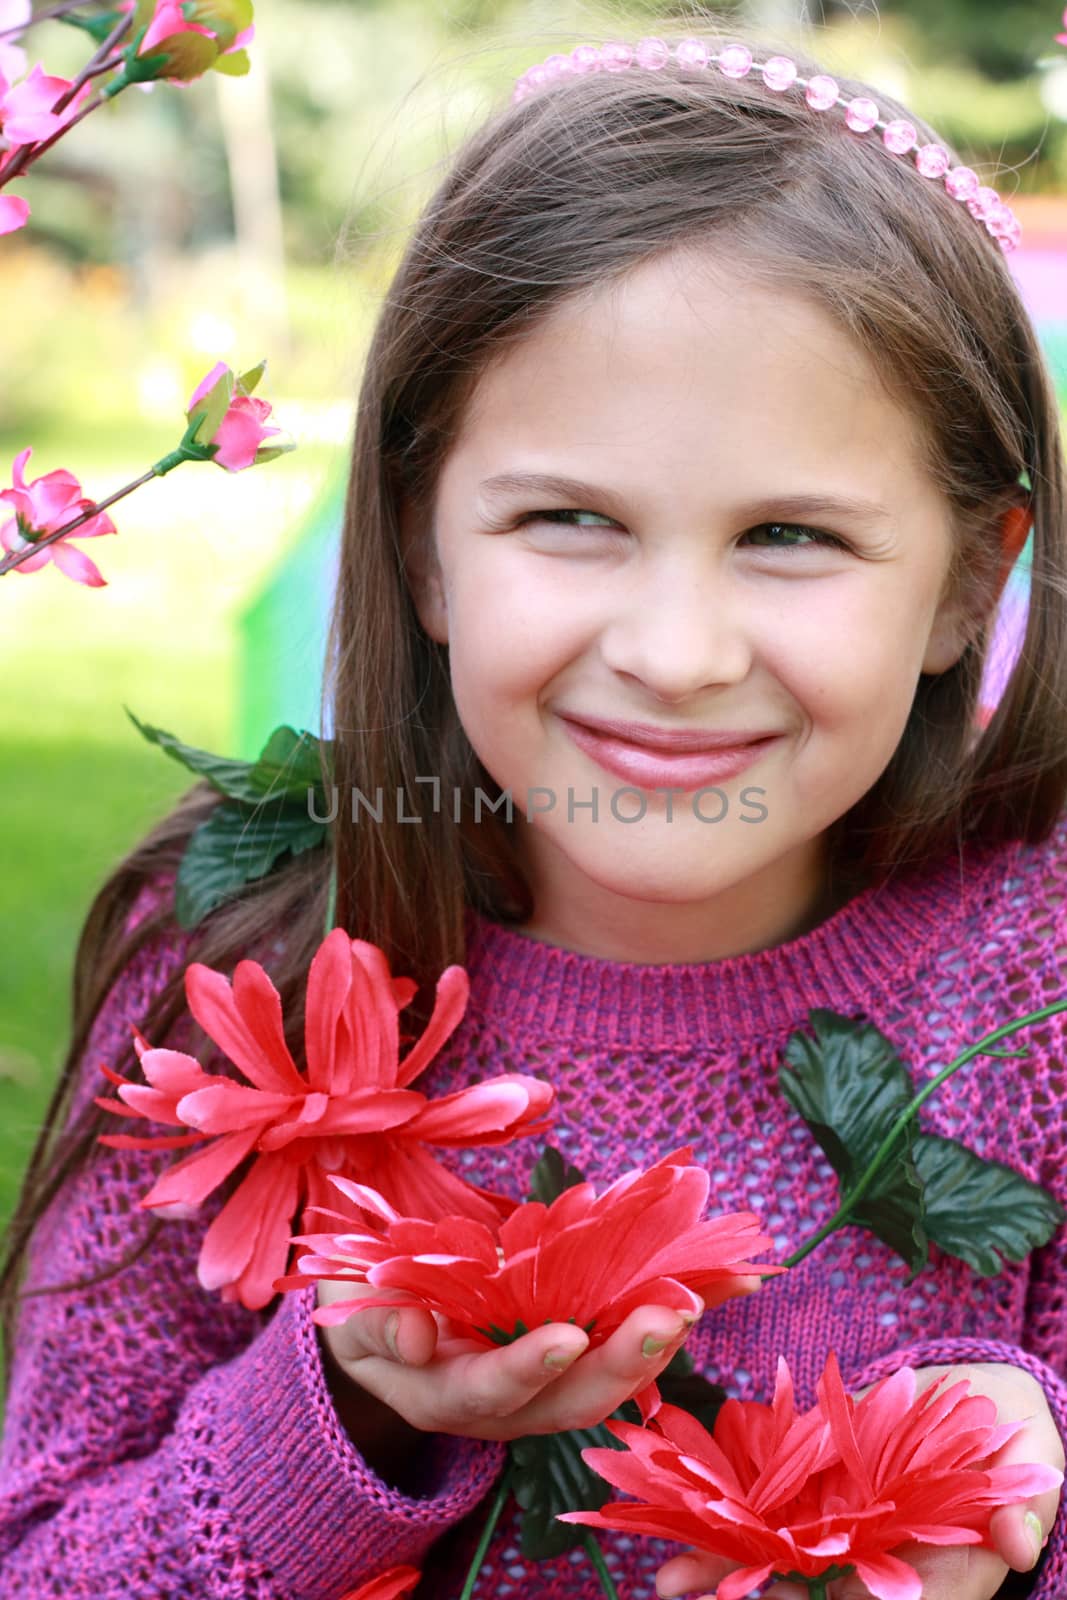 Portrait of lovely smiling girl holding flowers